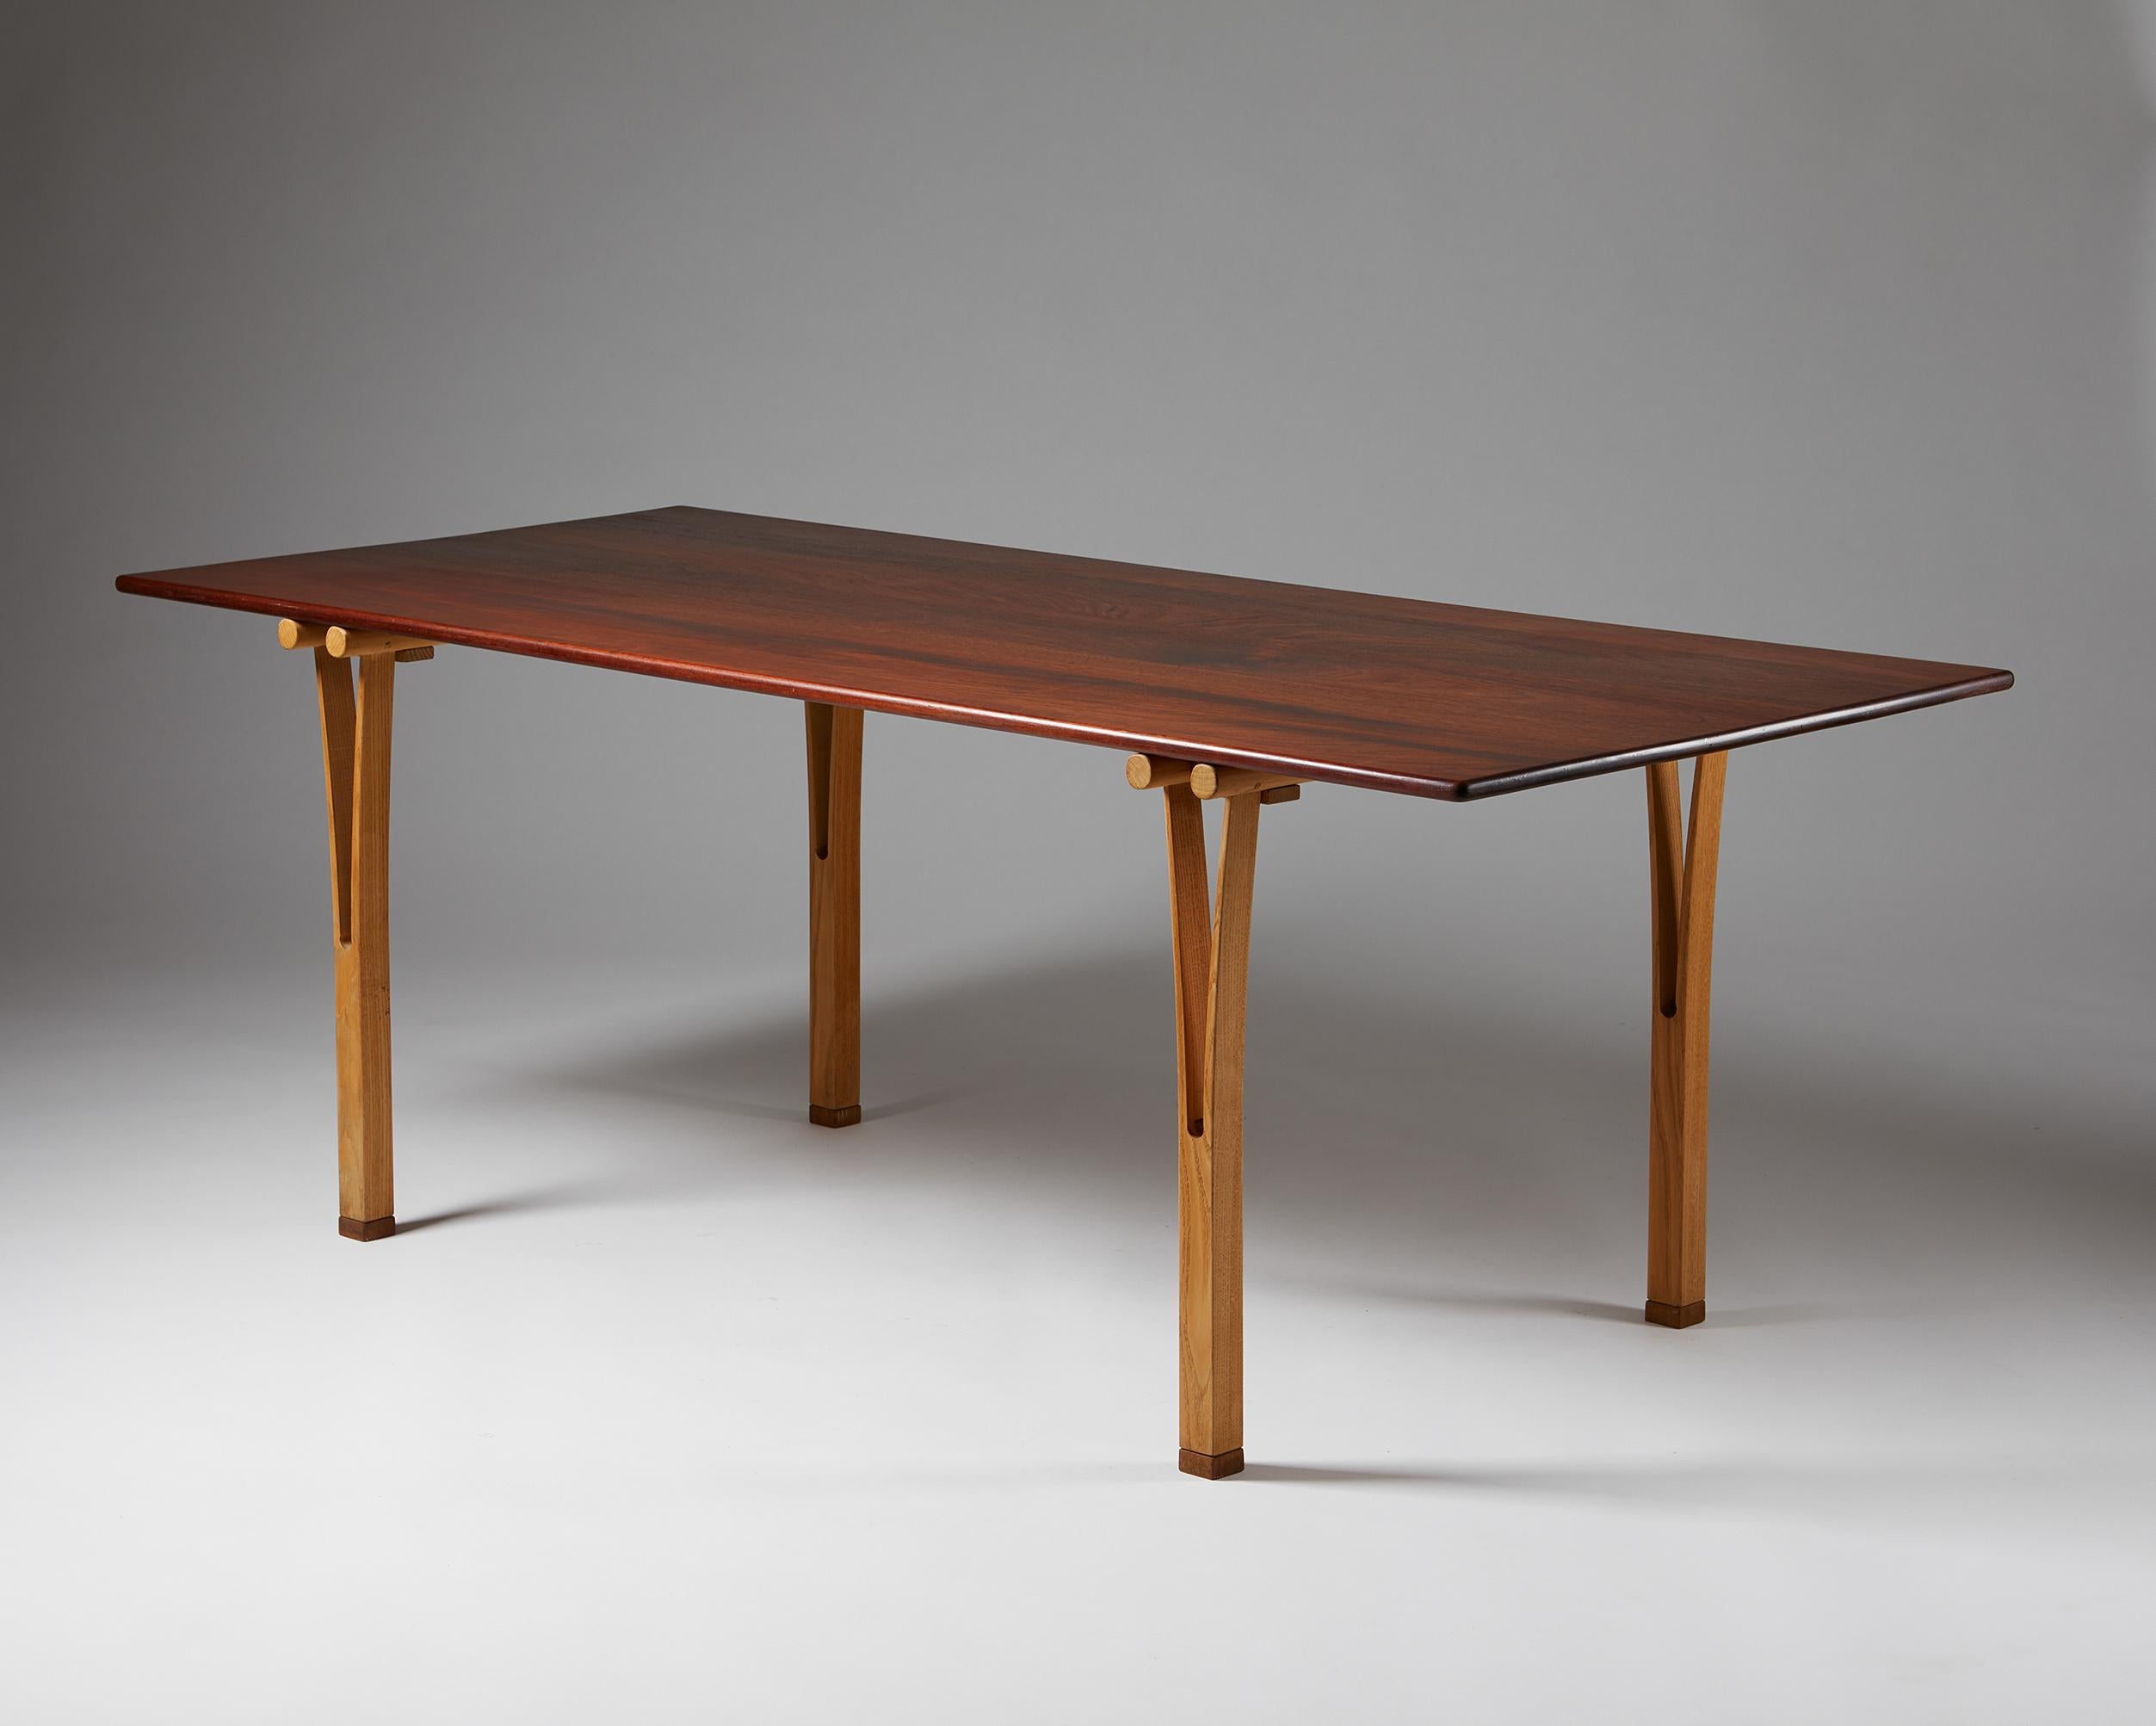 Teakholz und Buche.

Der Tisch wurde von Åke Axelsson für seinen persönlichen Gebrauch entworfen.

Maße: H: 70 cm / 2' 3 1/2'
L: 192 cm / 6' 4 1/2''
B: 84 cm / 2' 9''.